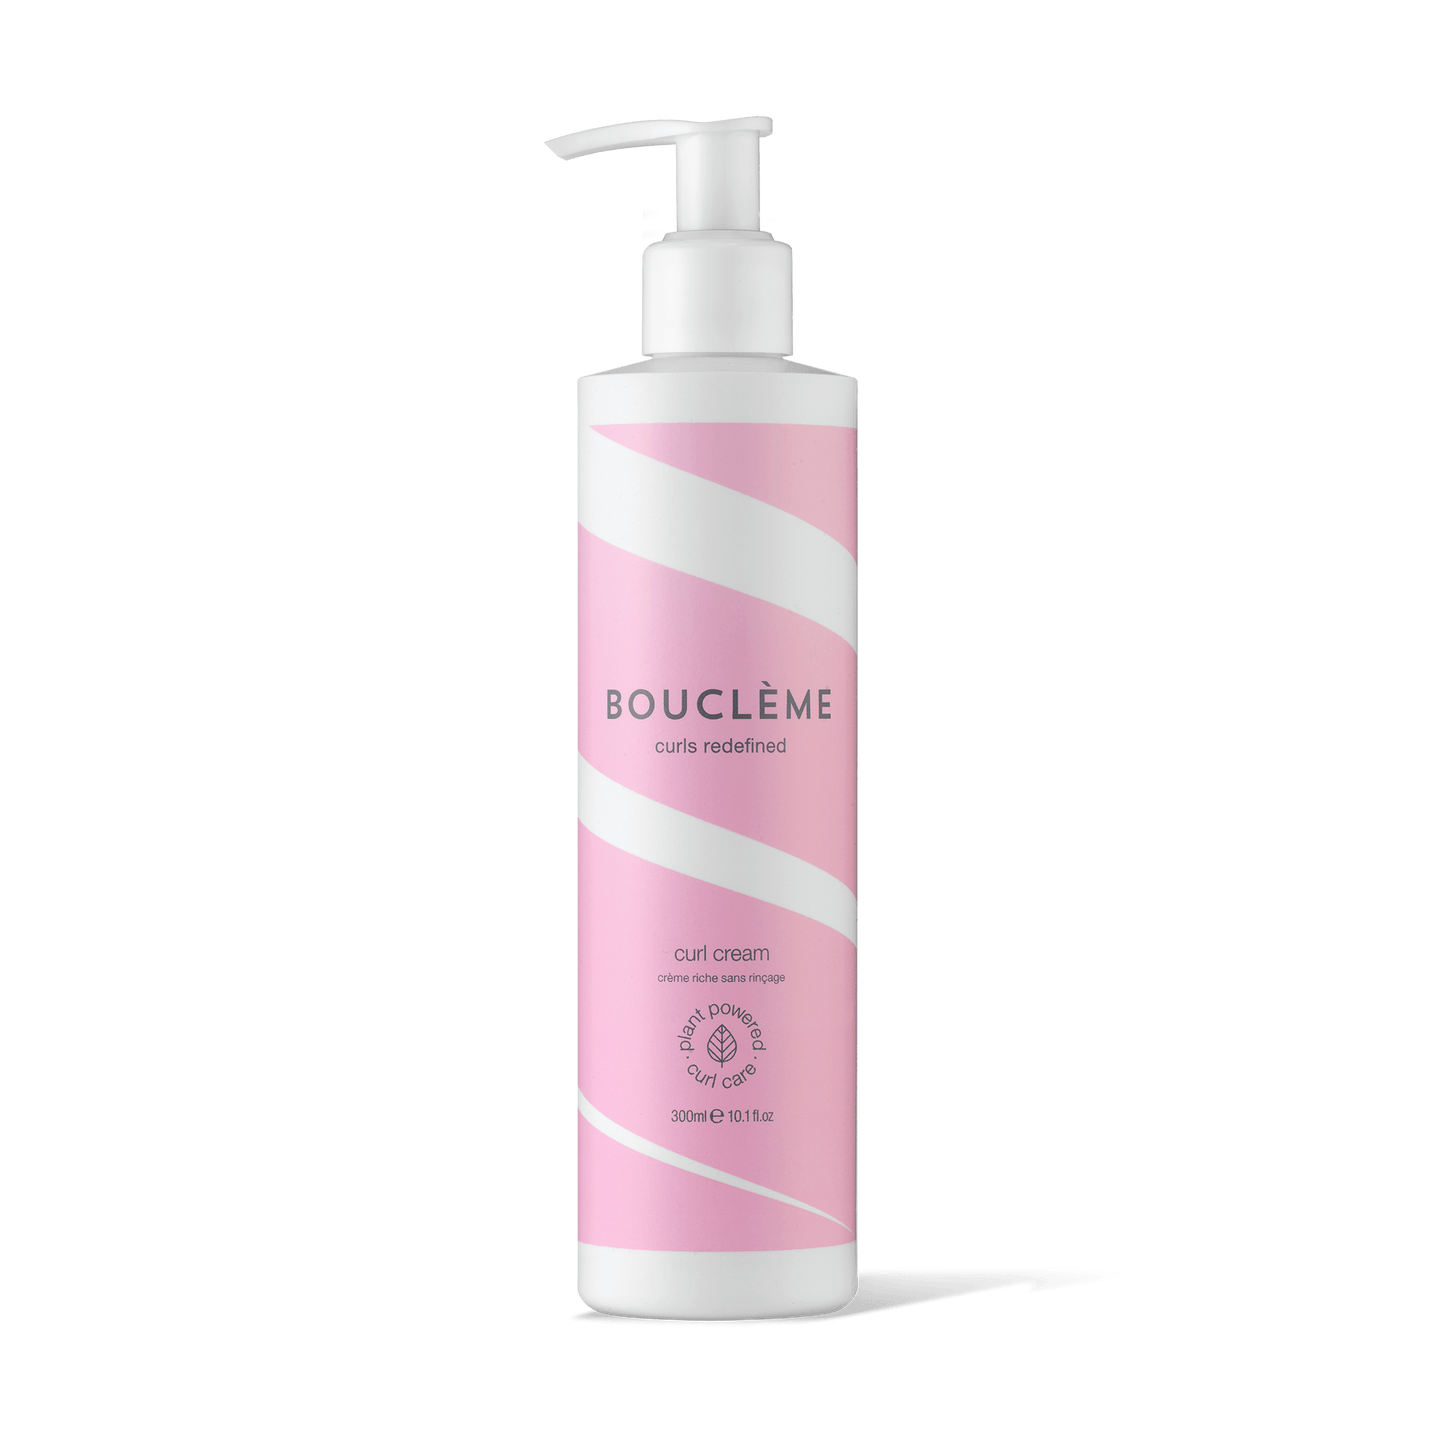 Curl Cream Refill Pouch - 300ml